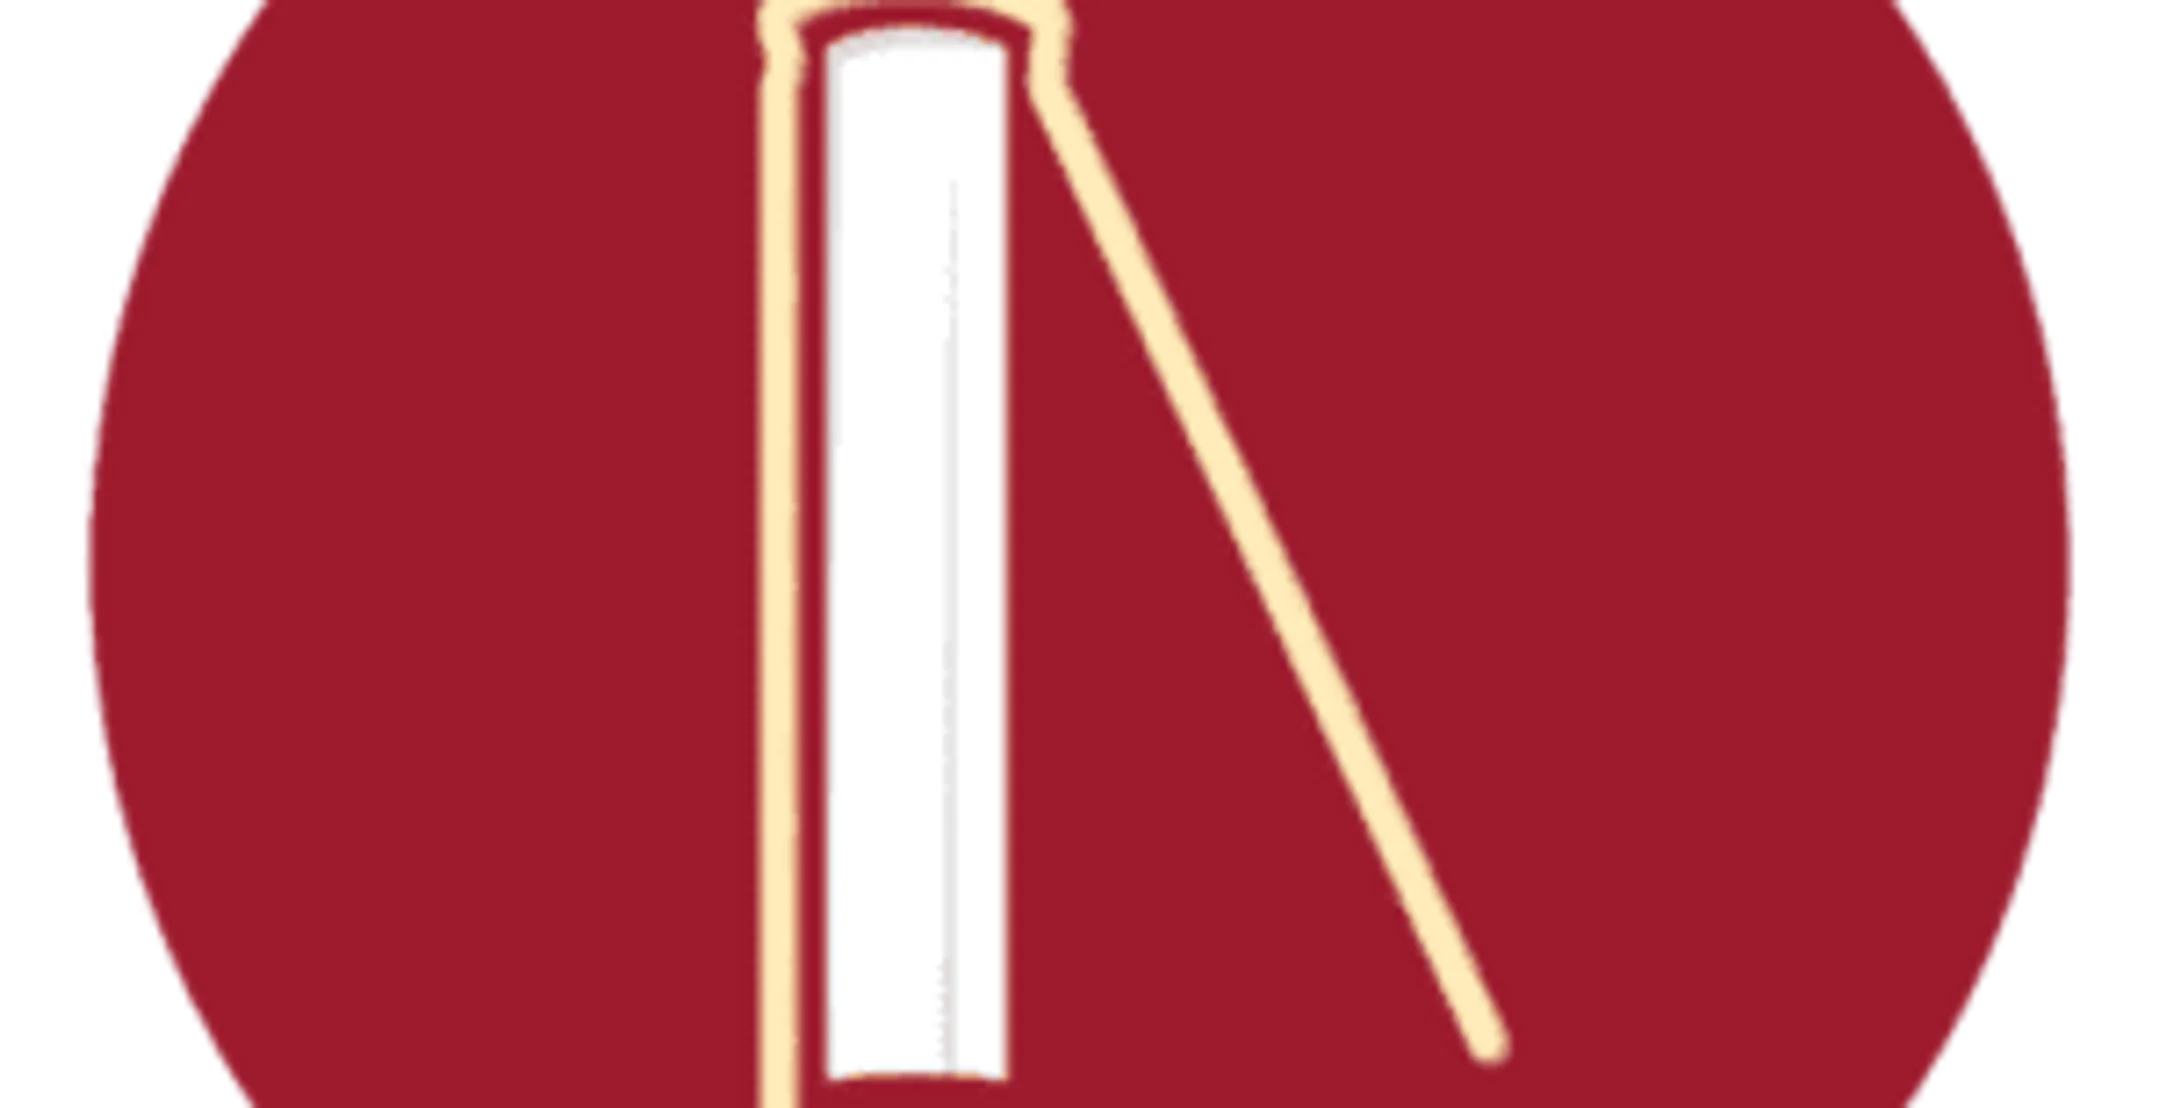 Logoen til Nynorskbok